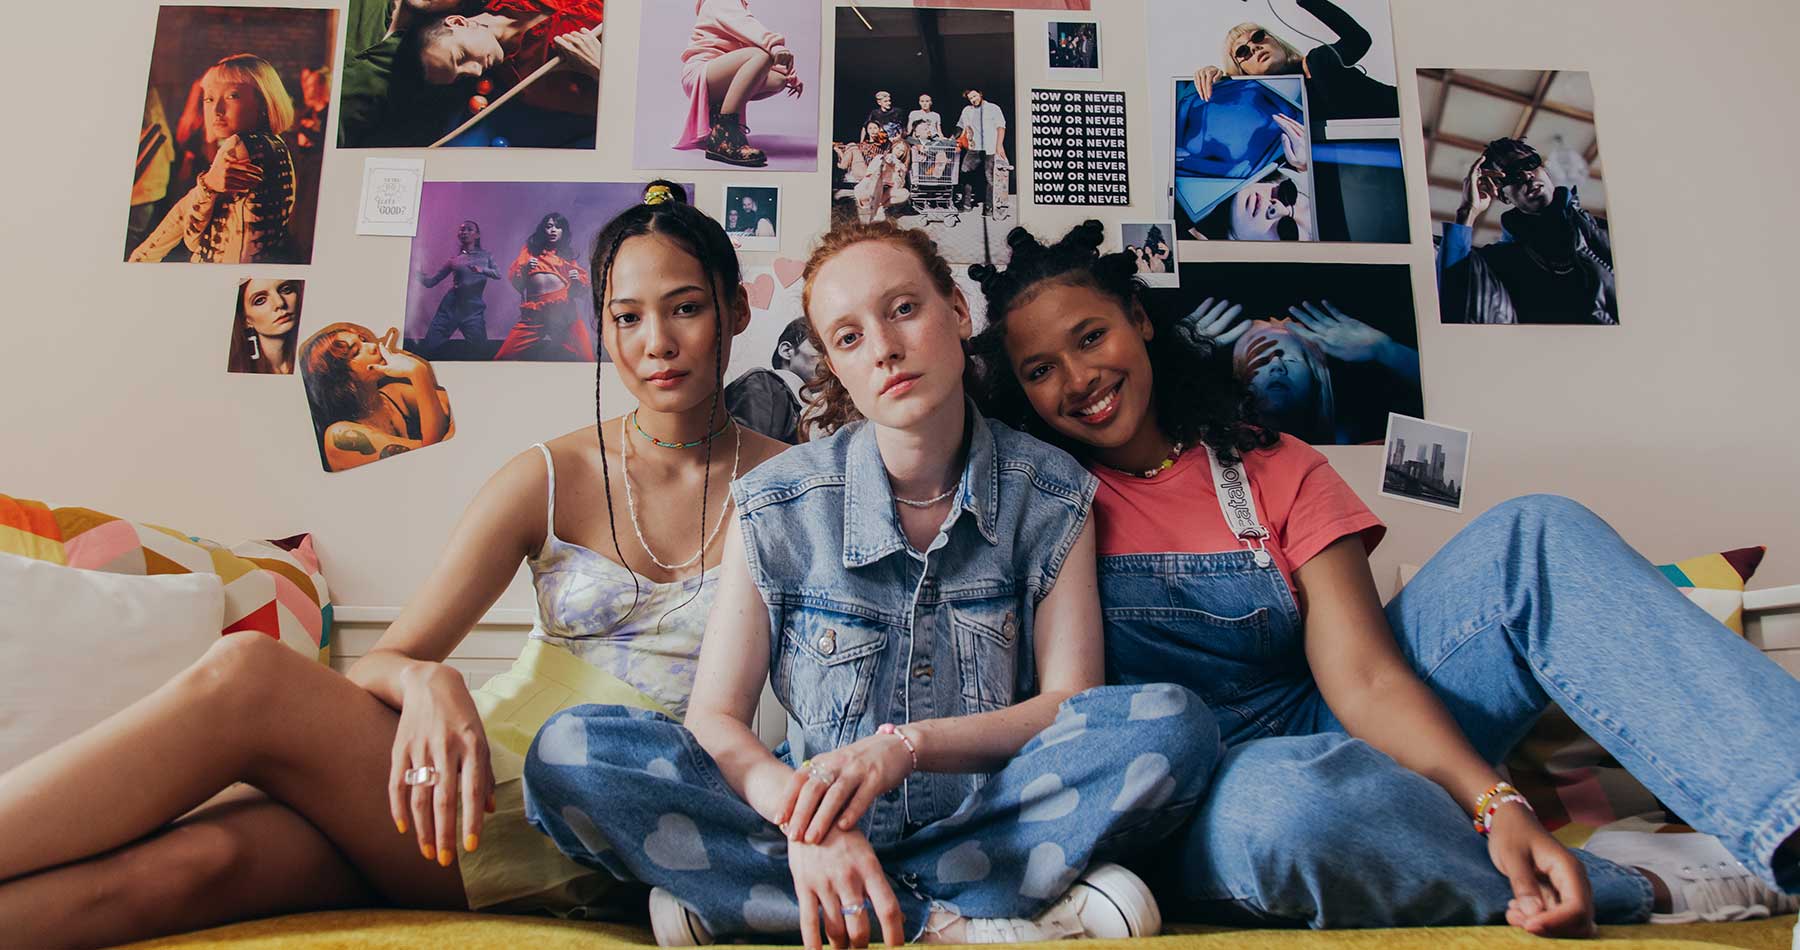 foto de três meninas, sentadas confortavelmente sobre um colchão, em frente a uma parede com diversos pôsteres em referência a tendência anos 80